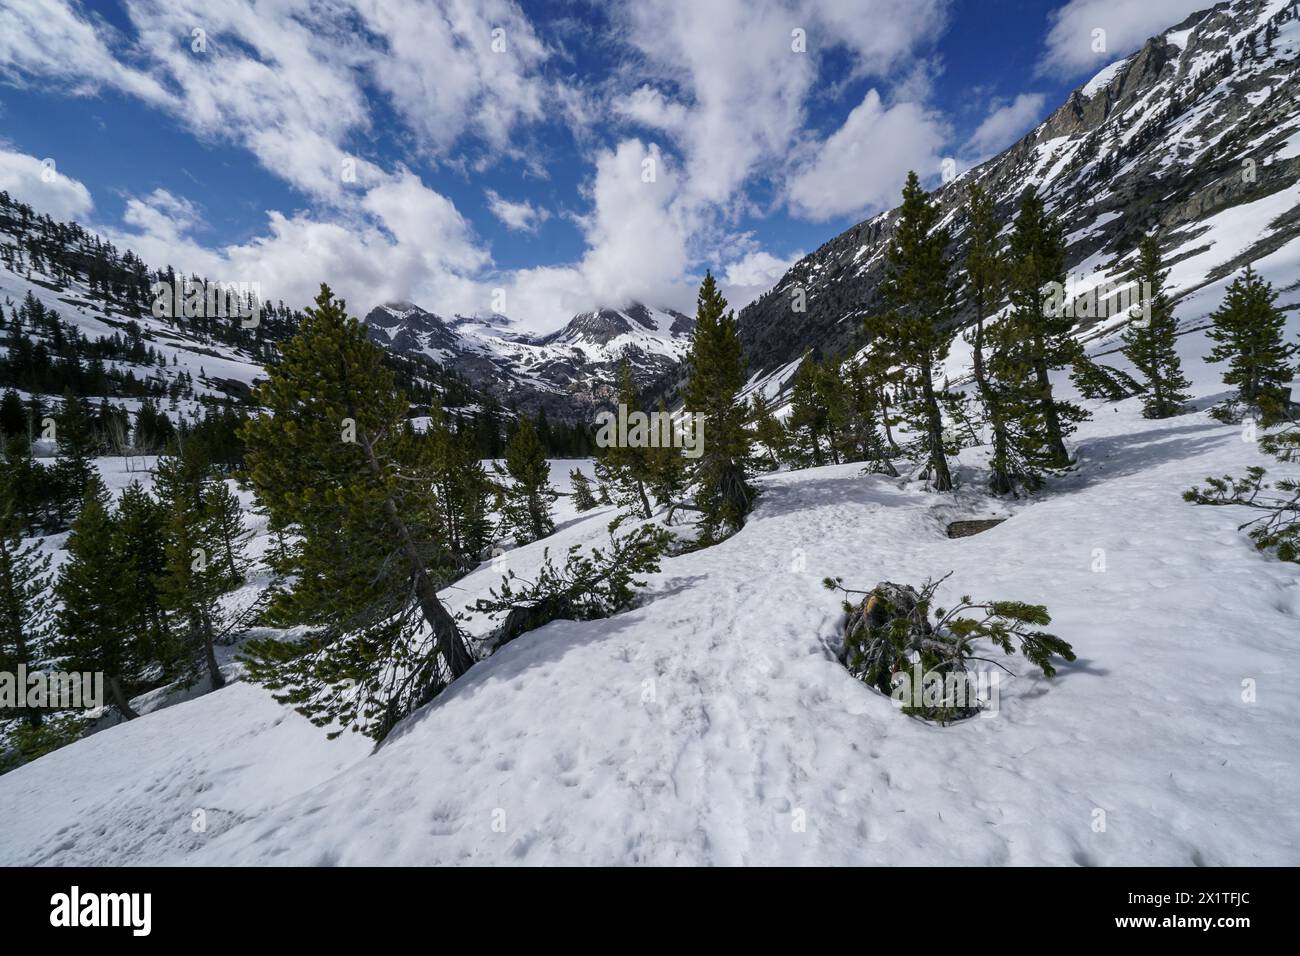 Pacific Crest Trail. Un paysage de montagne enneigé avec des arbres et un chemin. Le ciel est bleu avec quelques nuages Banque D'Images